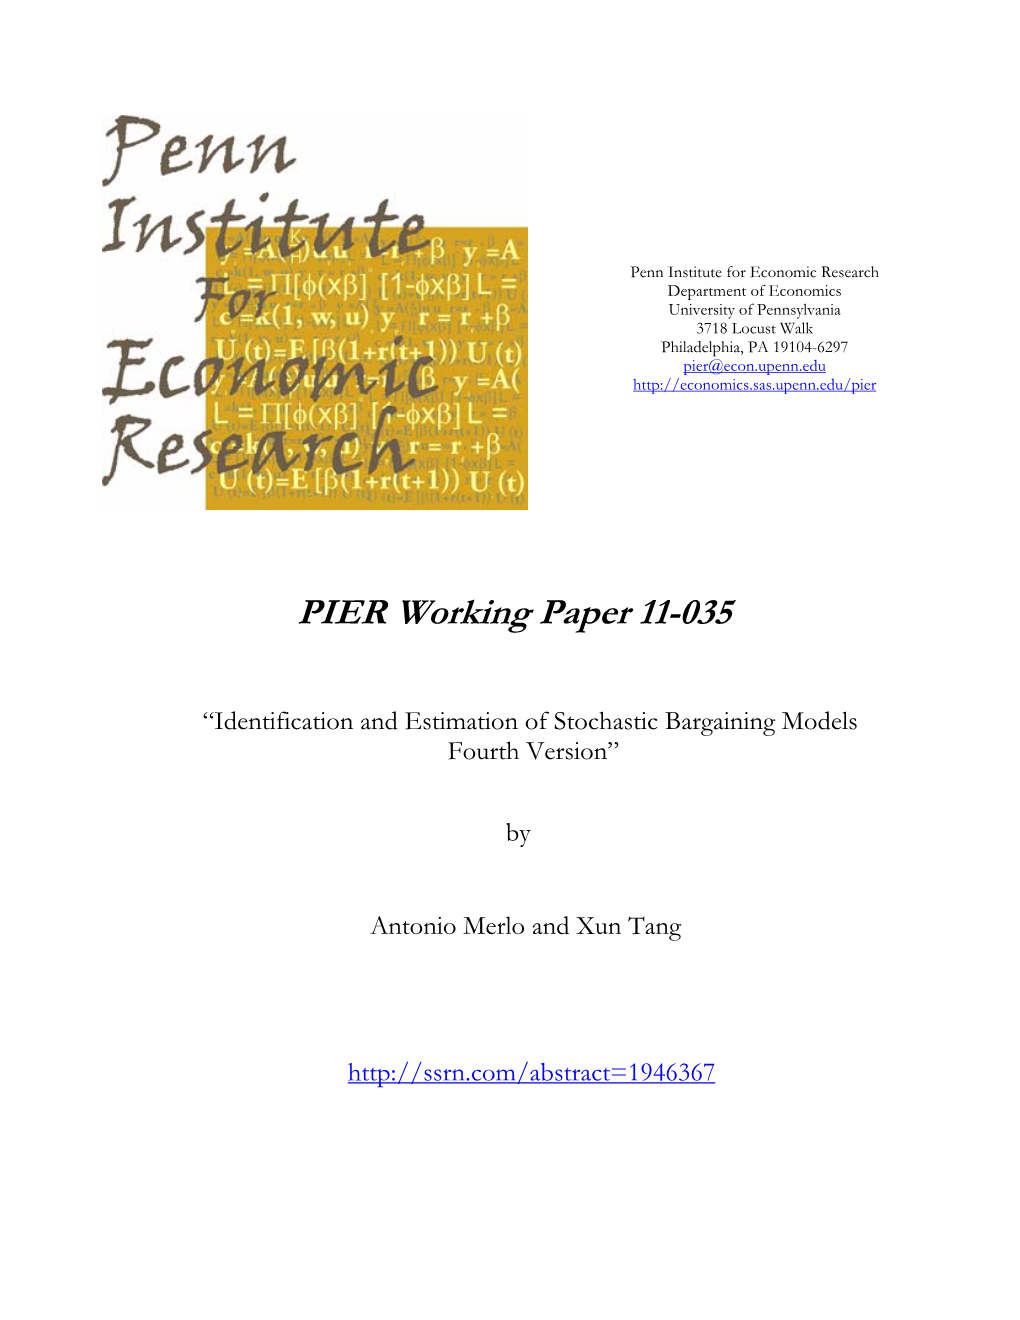 PIER Working Paper 11-035